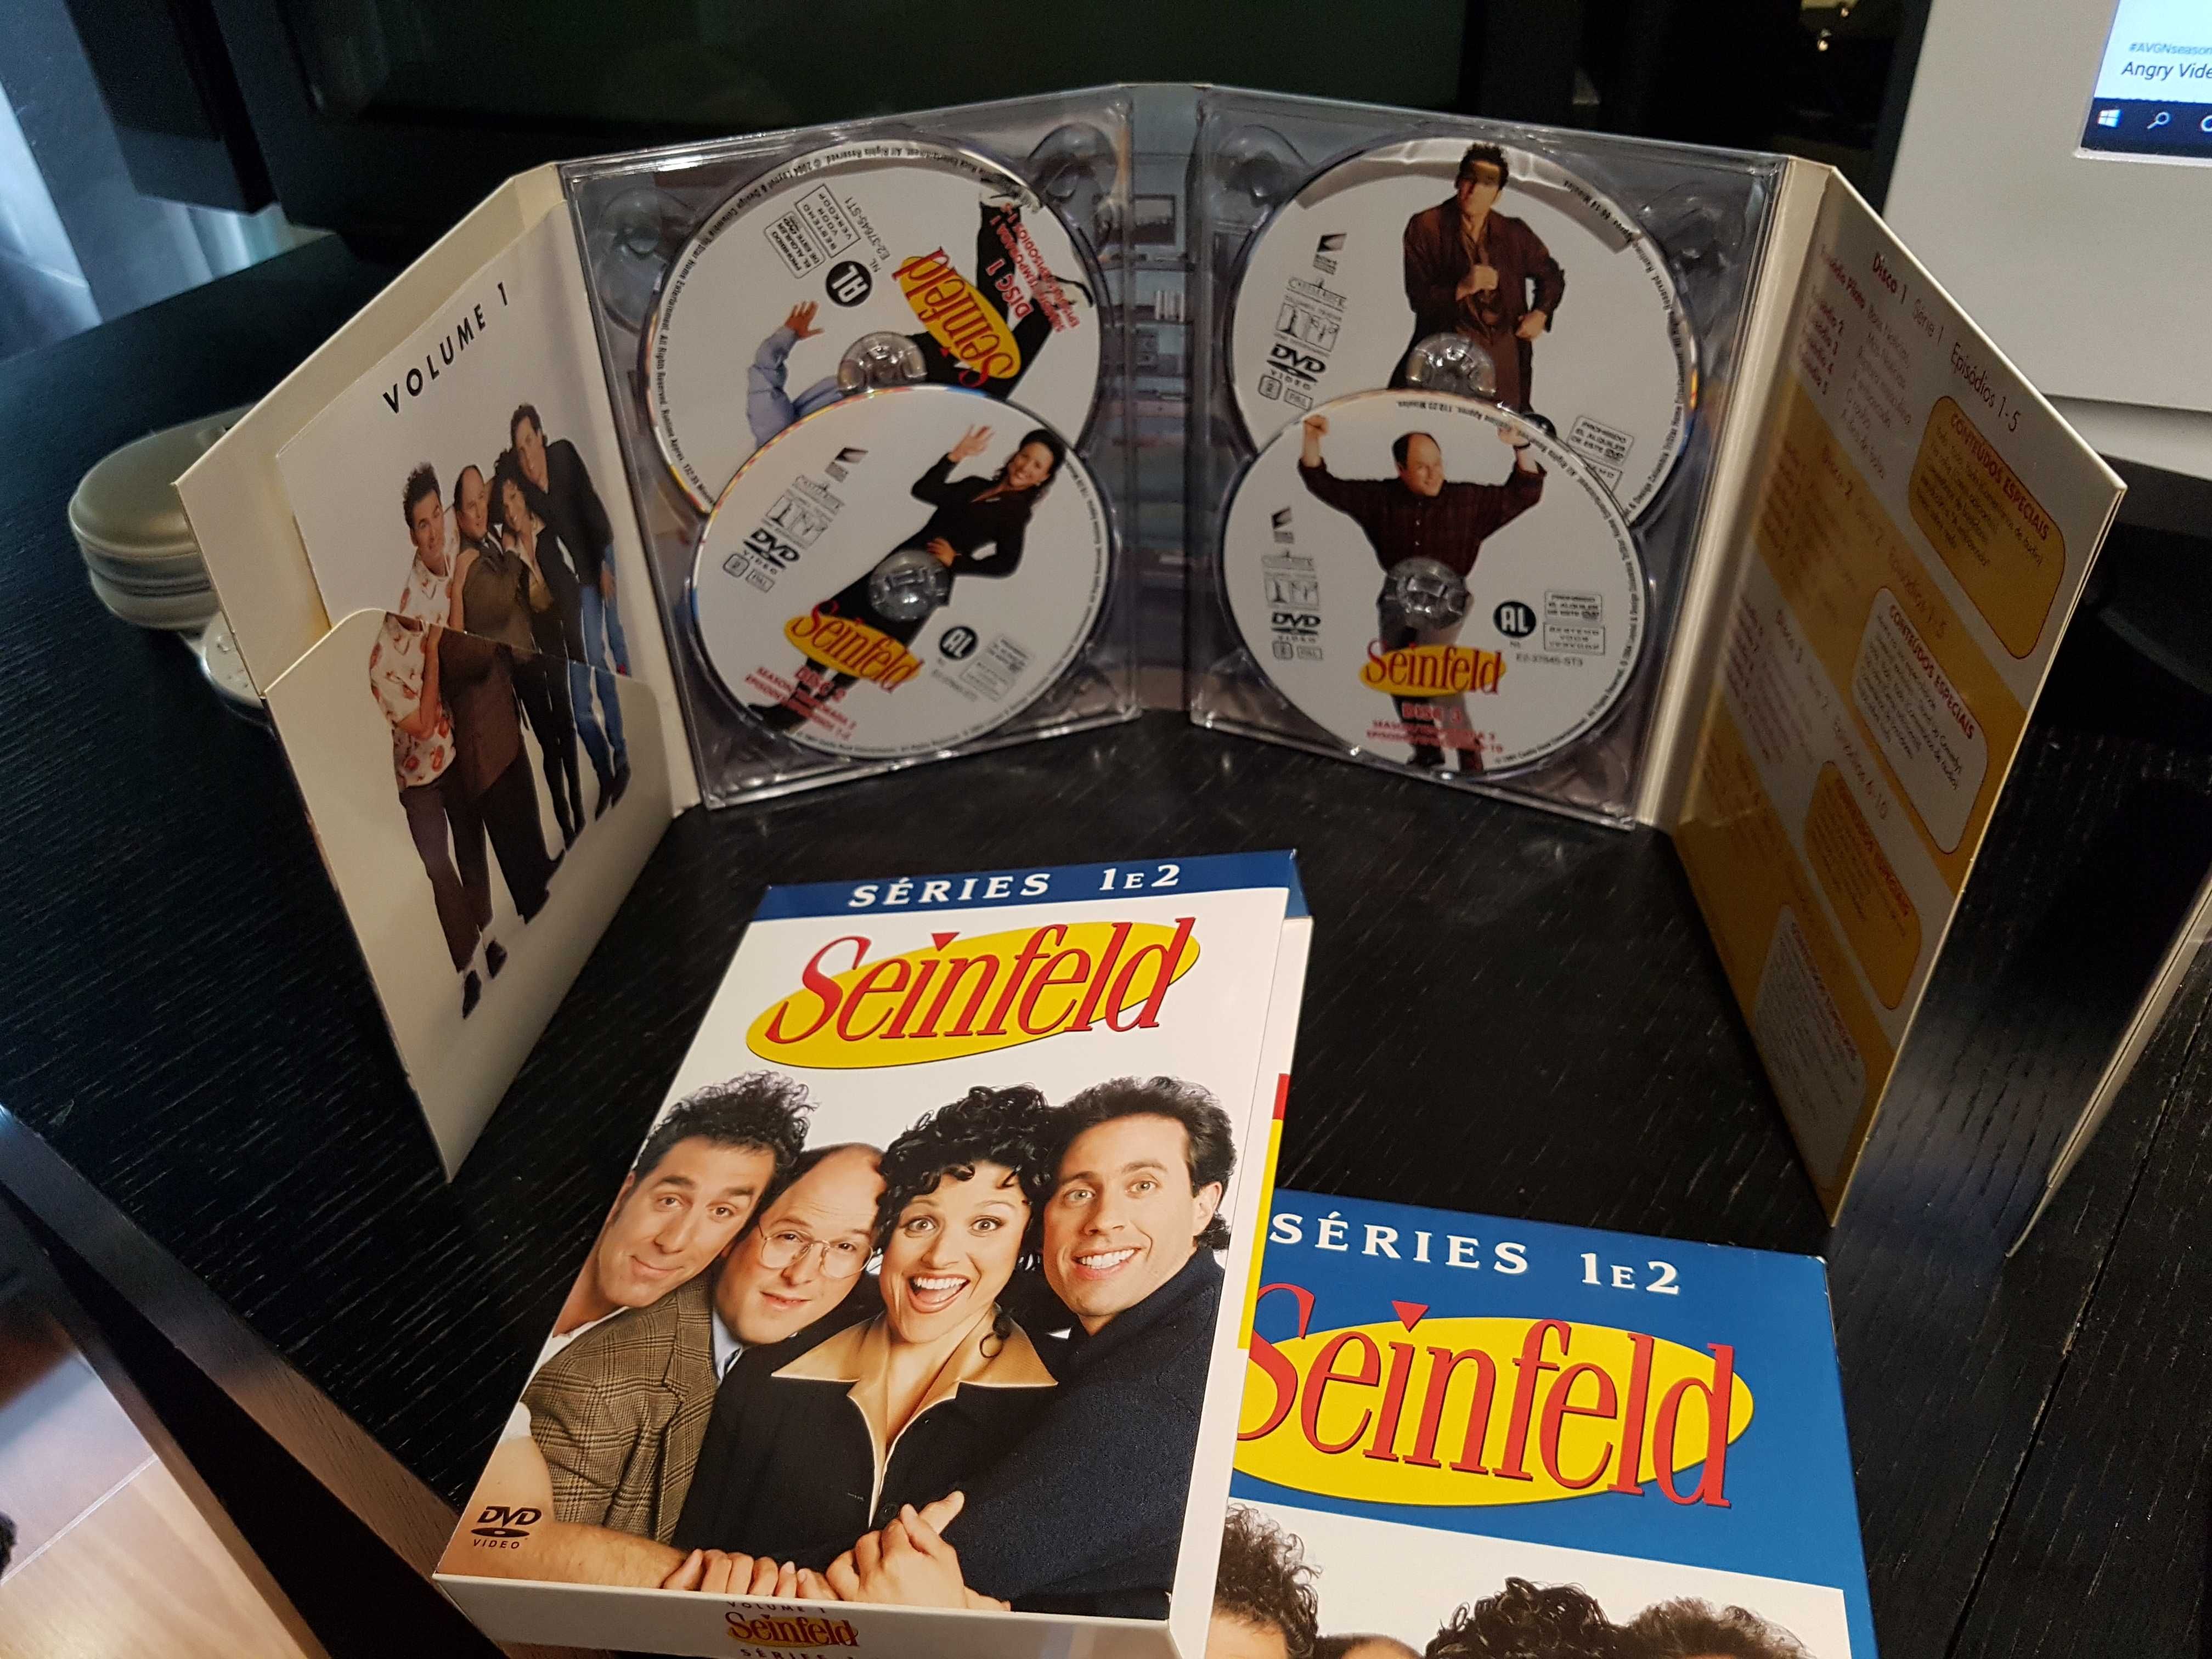 Seinfel Serie DVDs Temporadas 1, 2 e 3